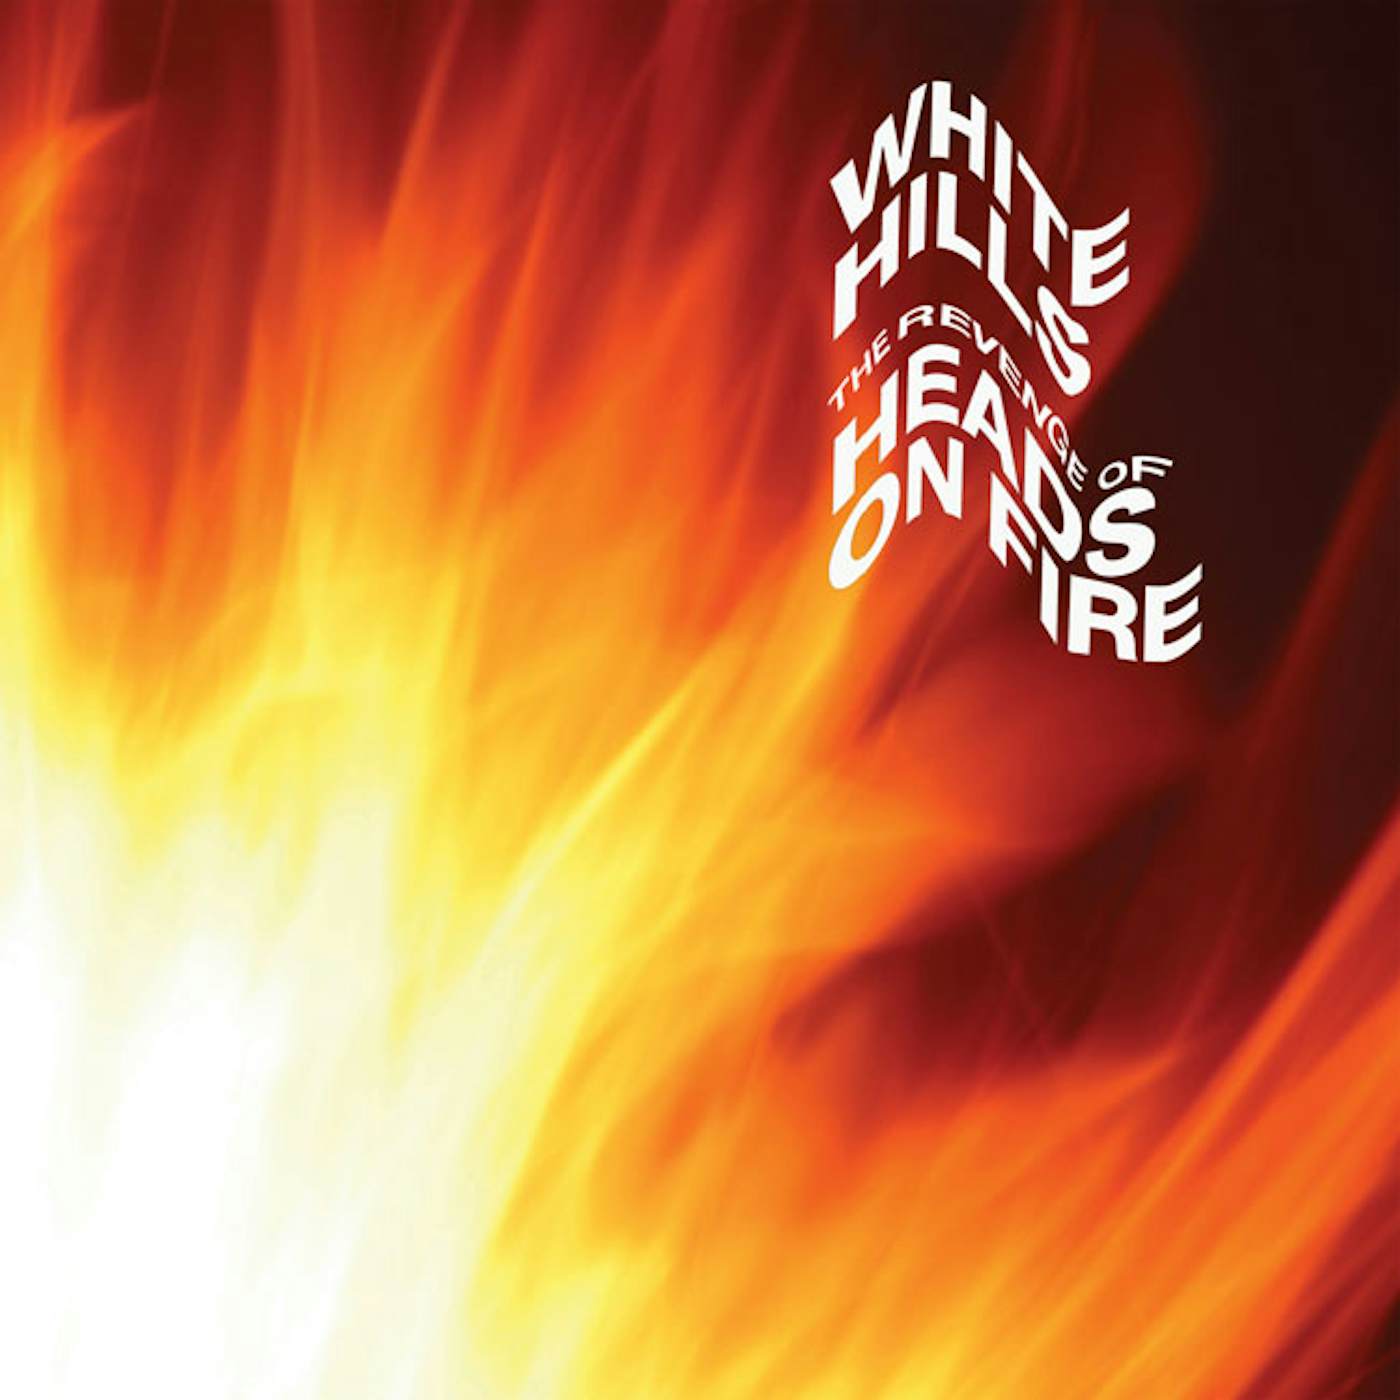 White Hills Revenge Of Heads On Fire vinyl record